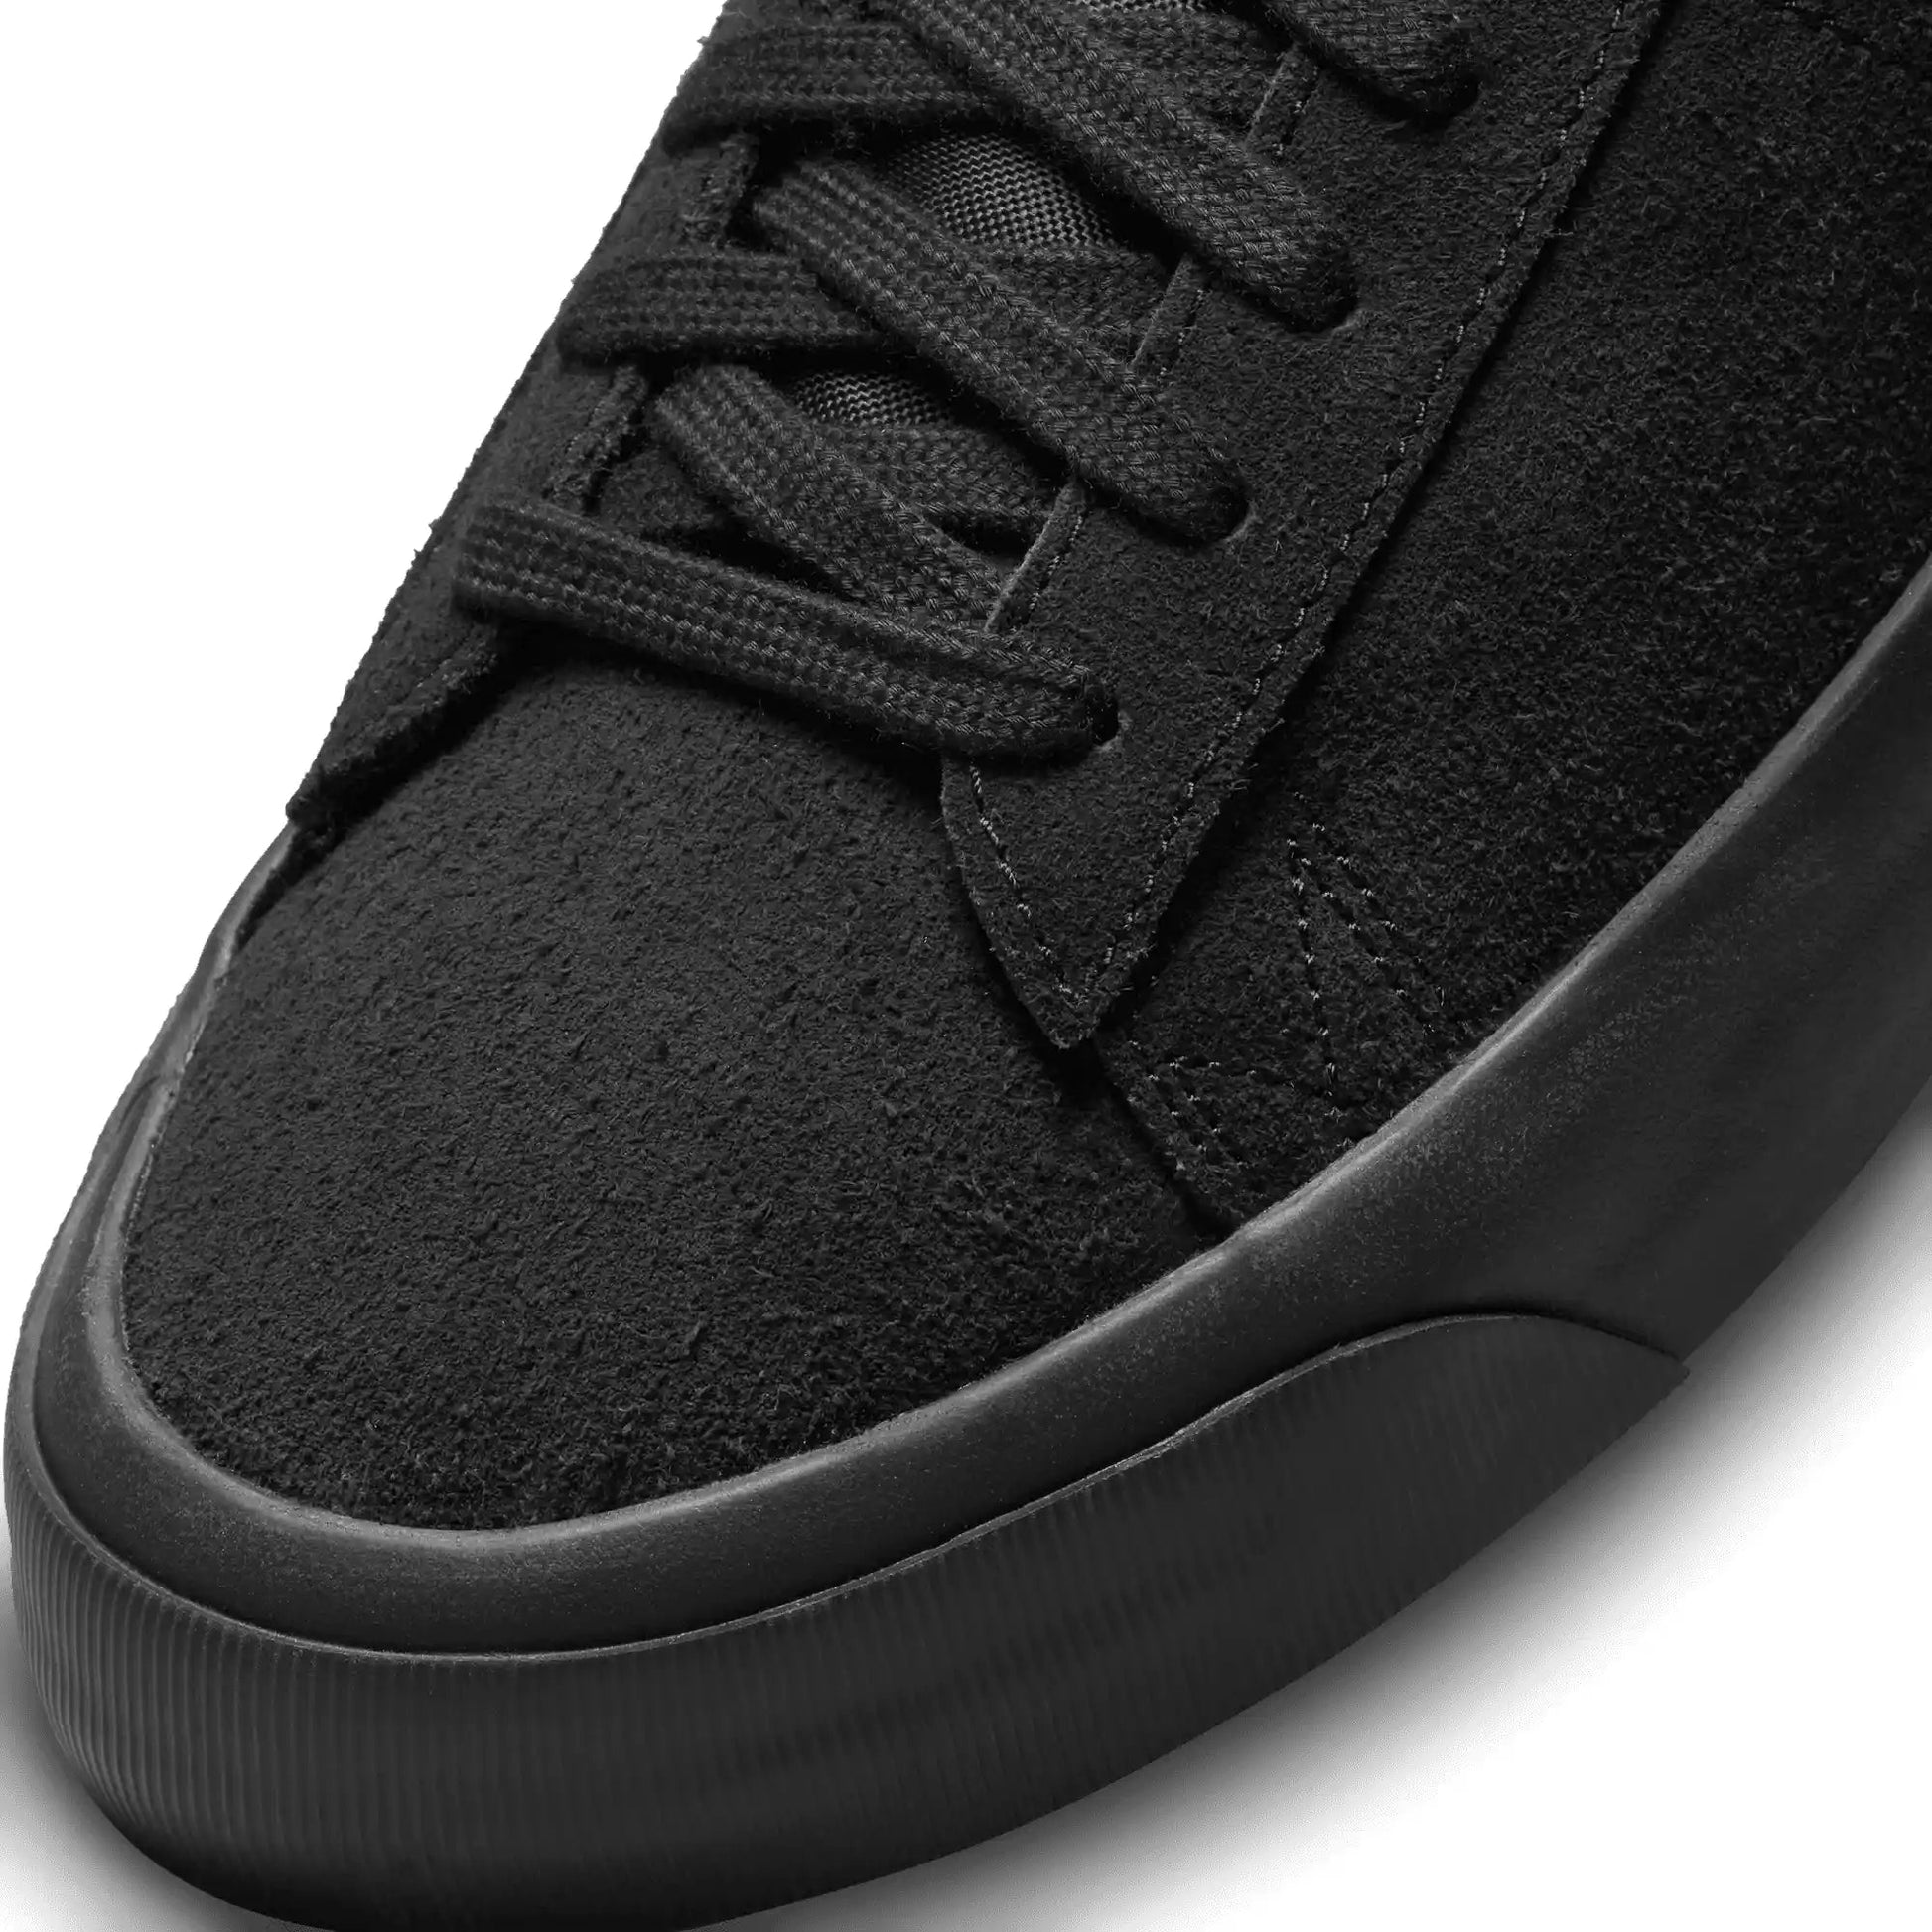 Nike SB Zoom Blazer Low Pro GT, black/black-black-anthracite - Tiki Room Skateboards - 5